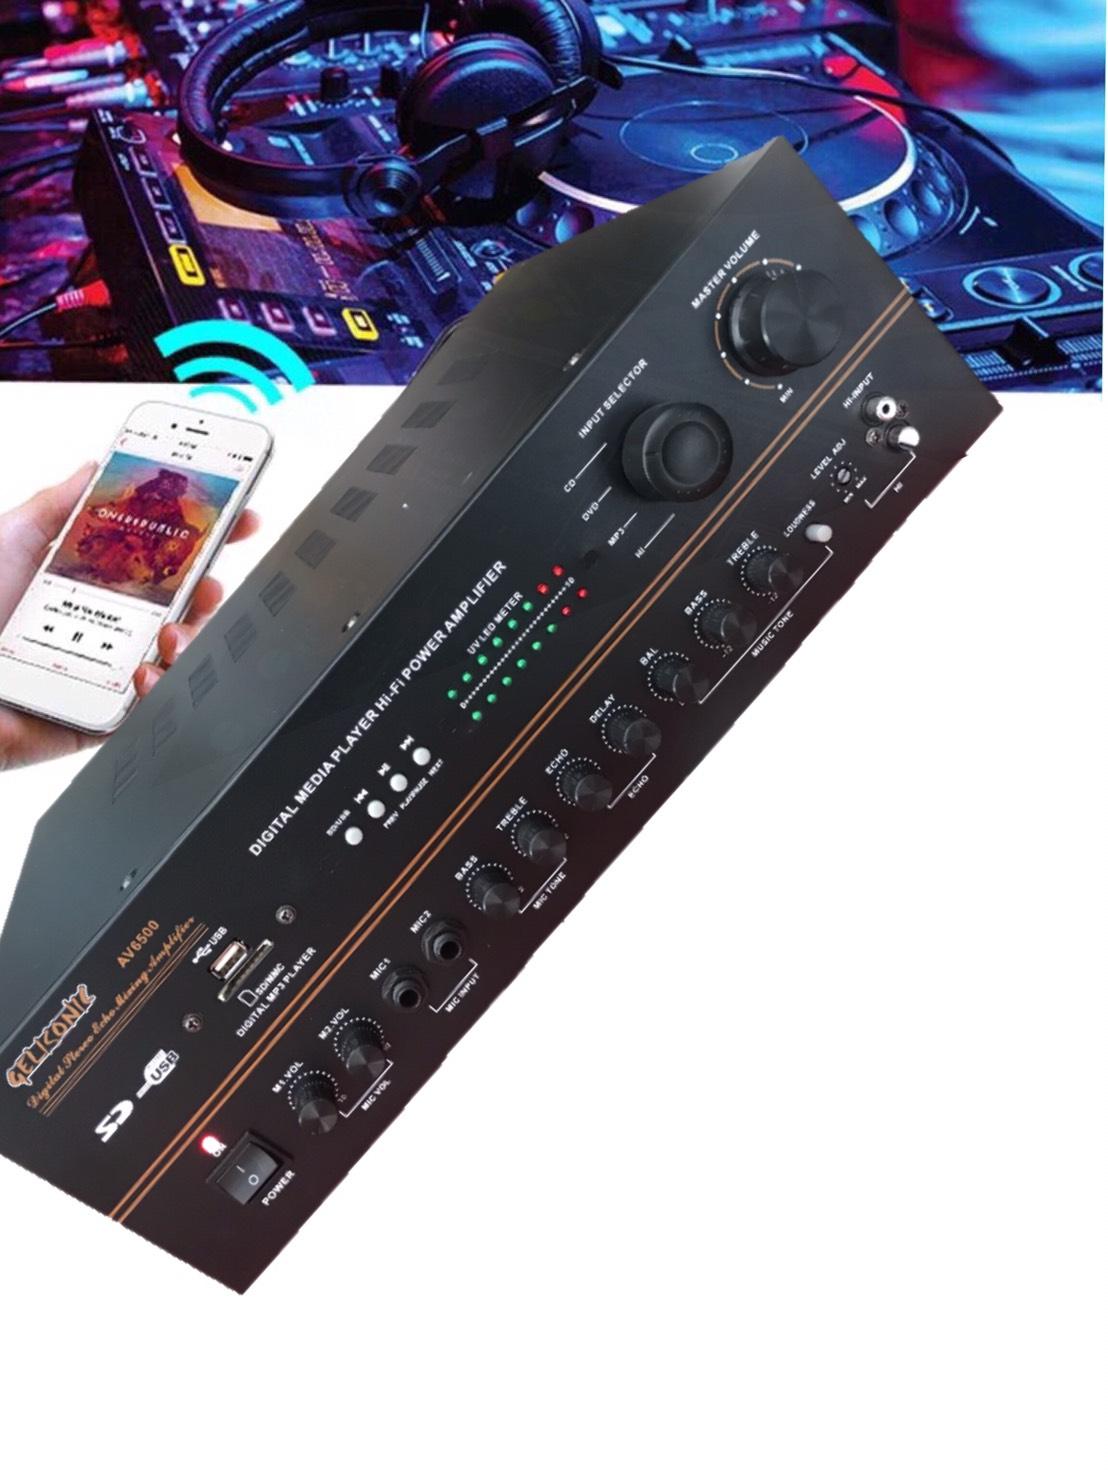 เครื่องขยายเสียง คาราโอเกะ เพาเวอร์มิกเซอร์ BLUETOOTH USB MP3 SD CARD FM RADIO รุ่น AV-6500 ฟรีสายสัญญาณเสียง 2 เส้น คละสี ยาว1.5เมตร